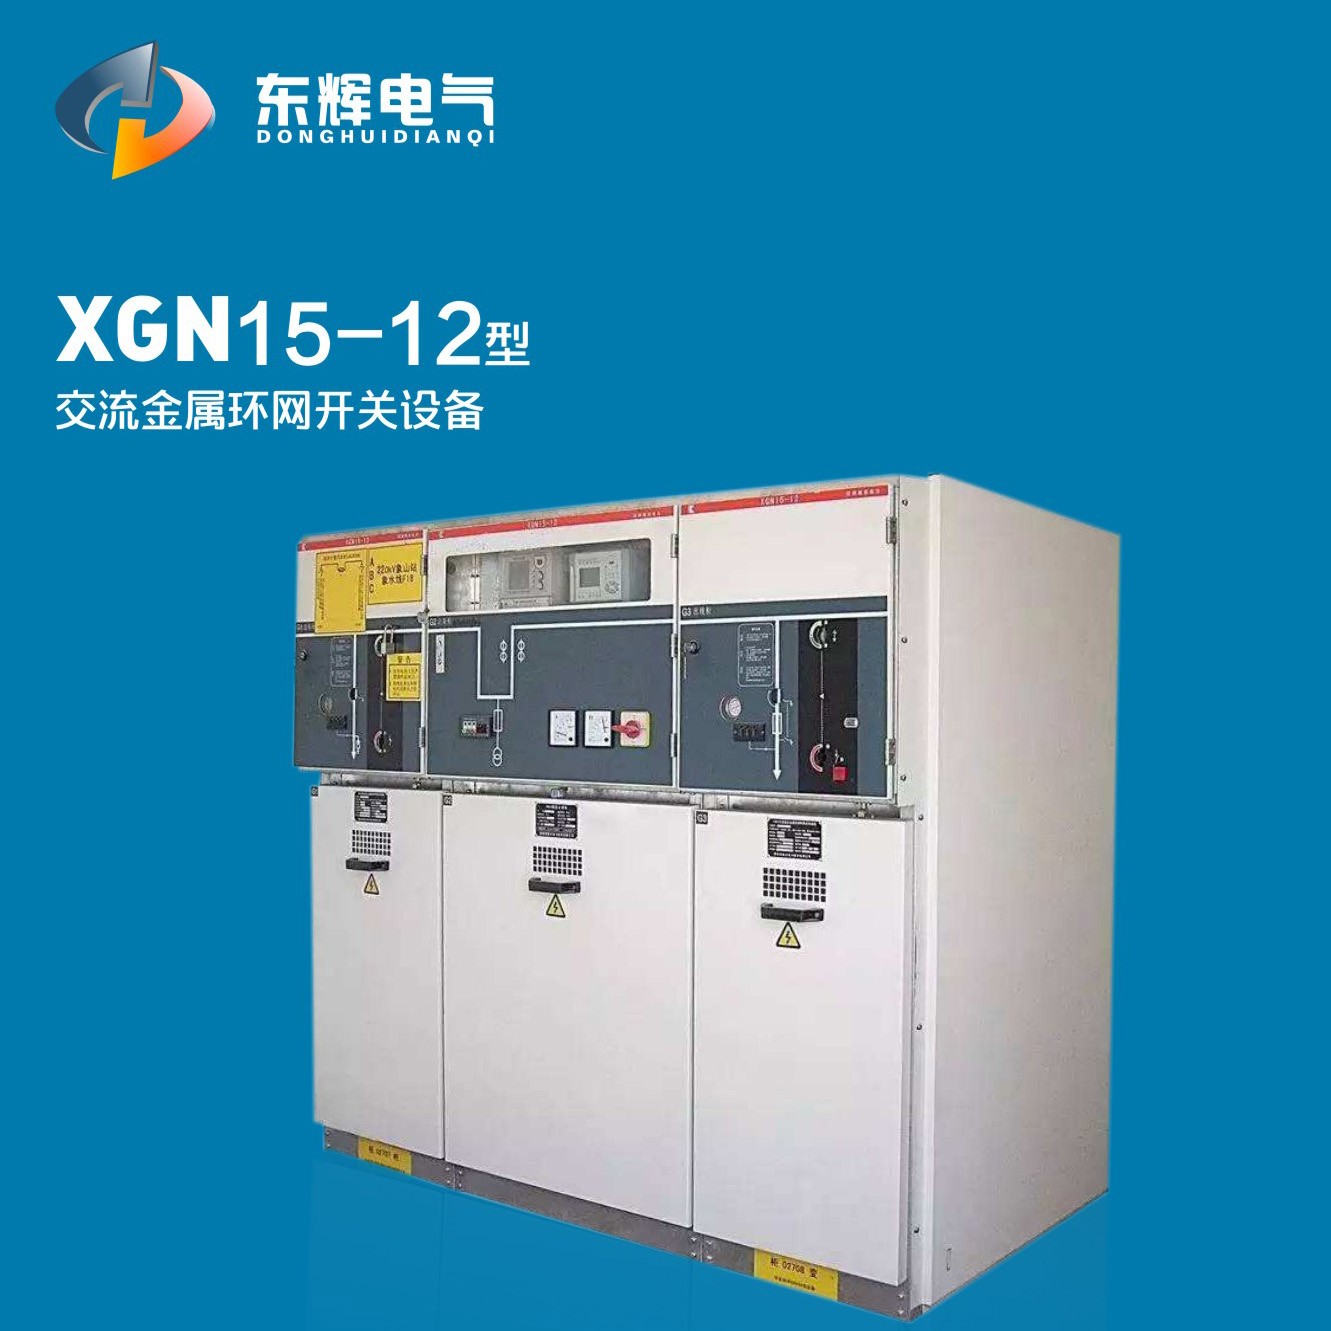 XGN15-12型交流金屬環網開關設備